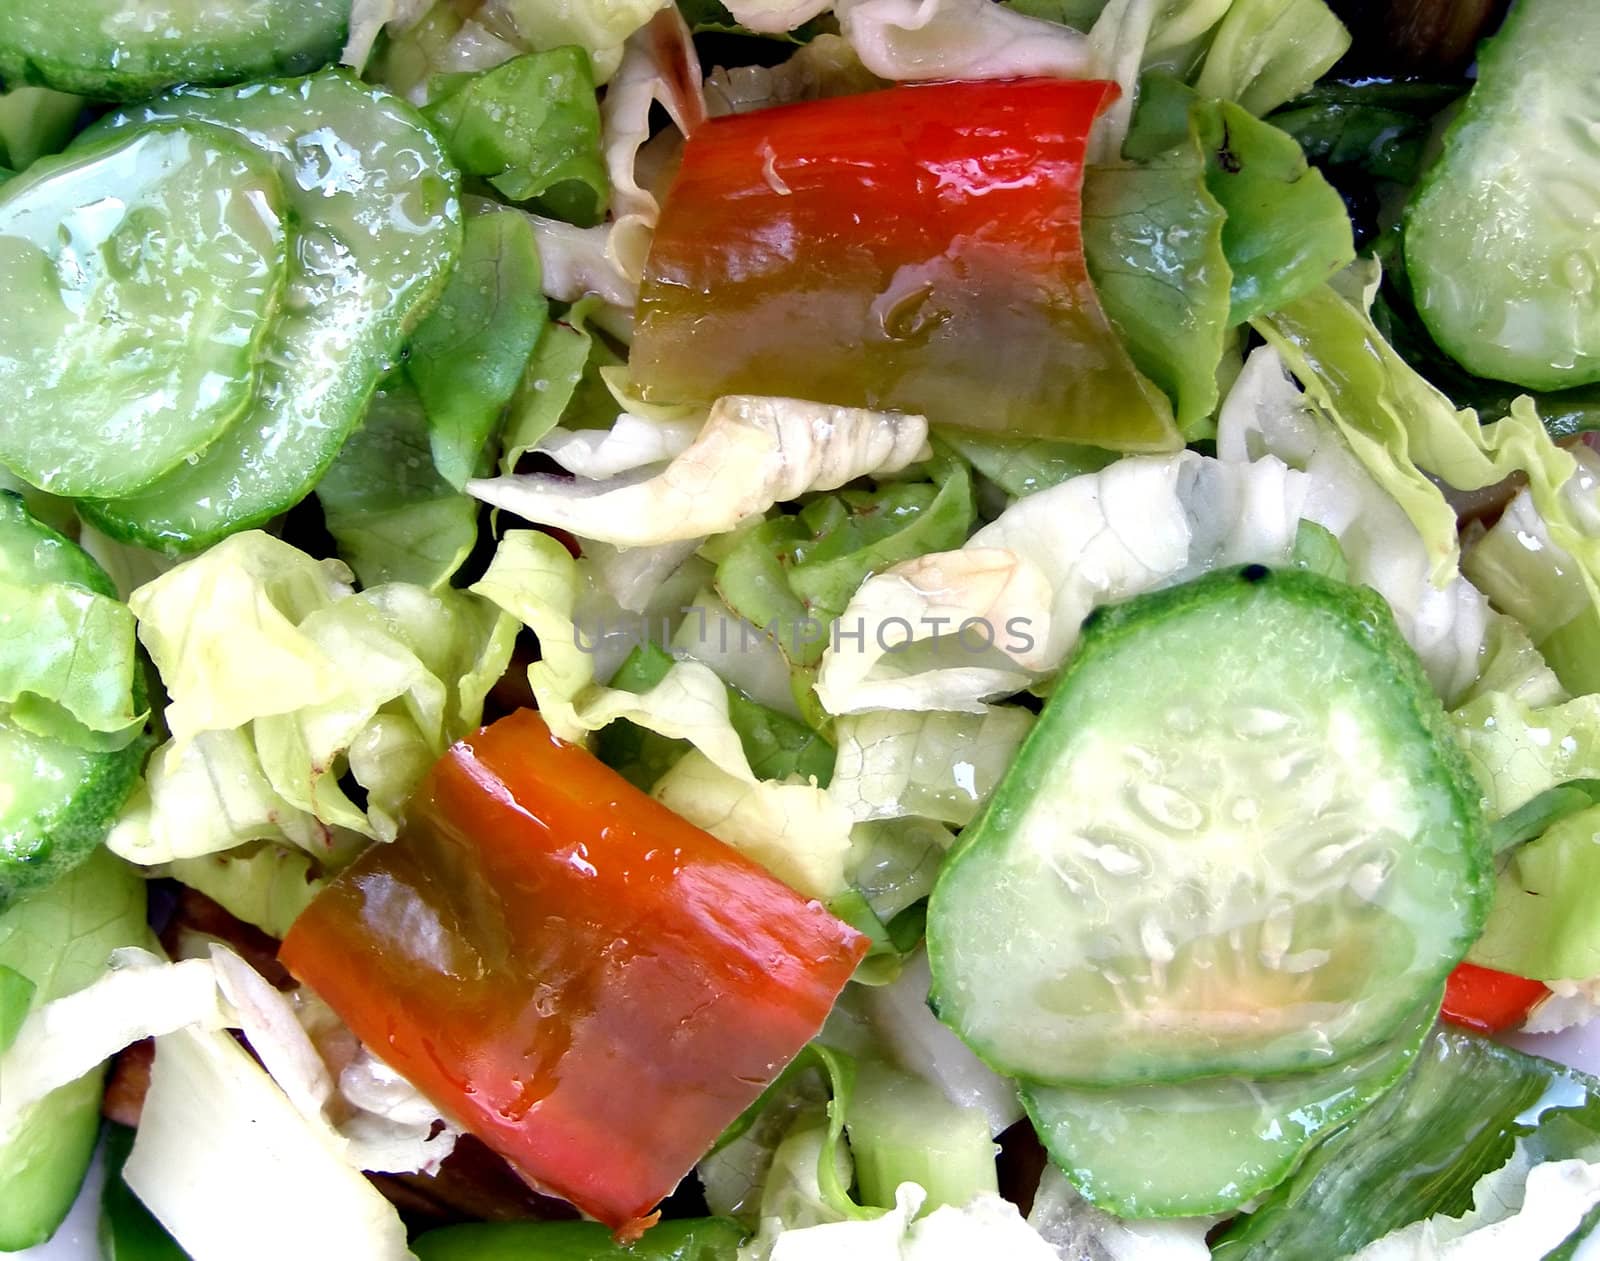 Salad by claudiodivizia